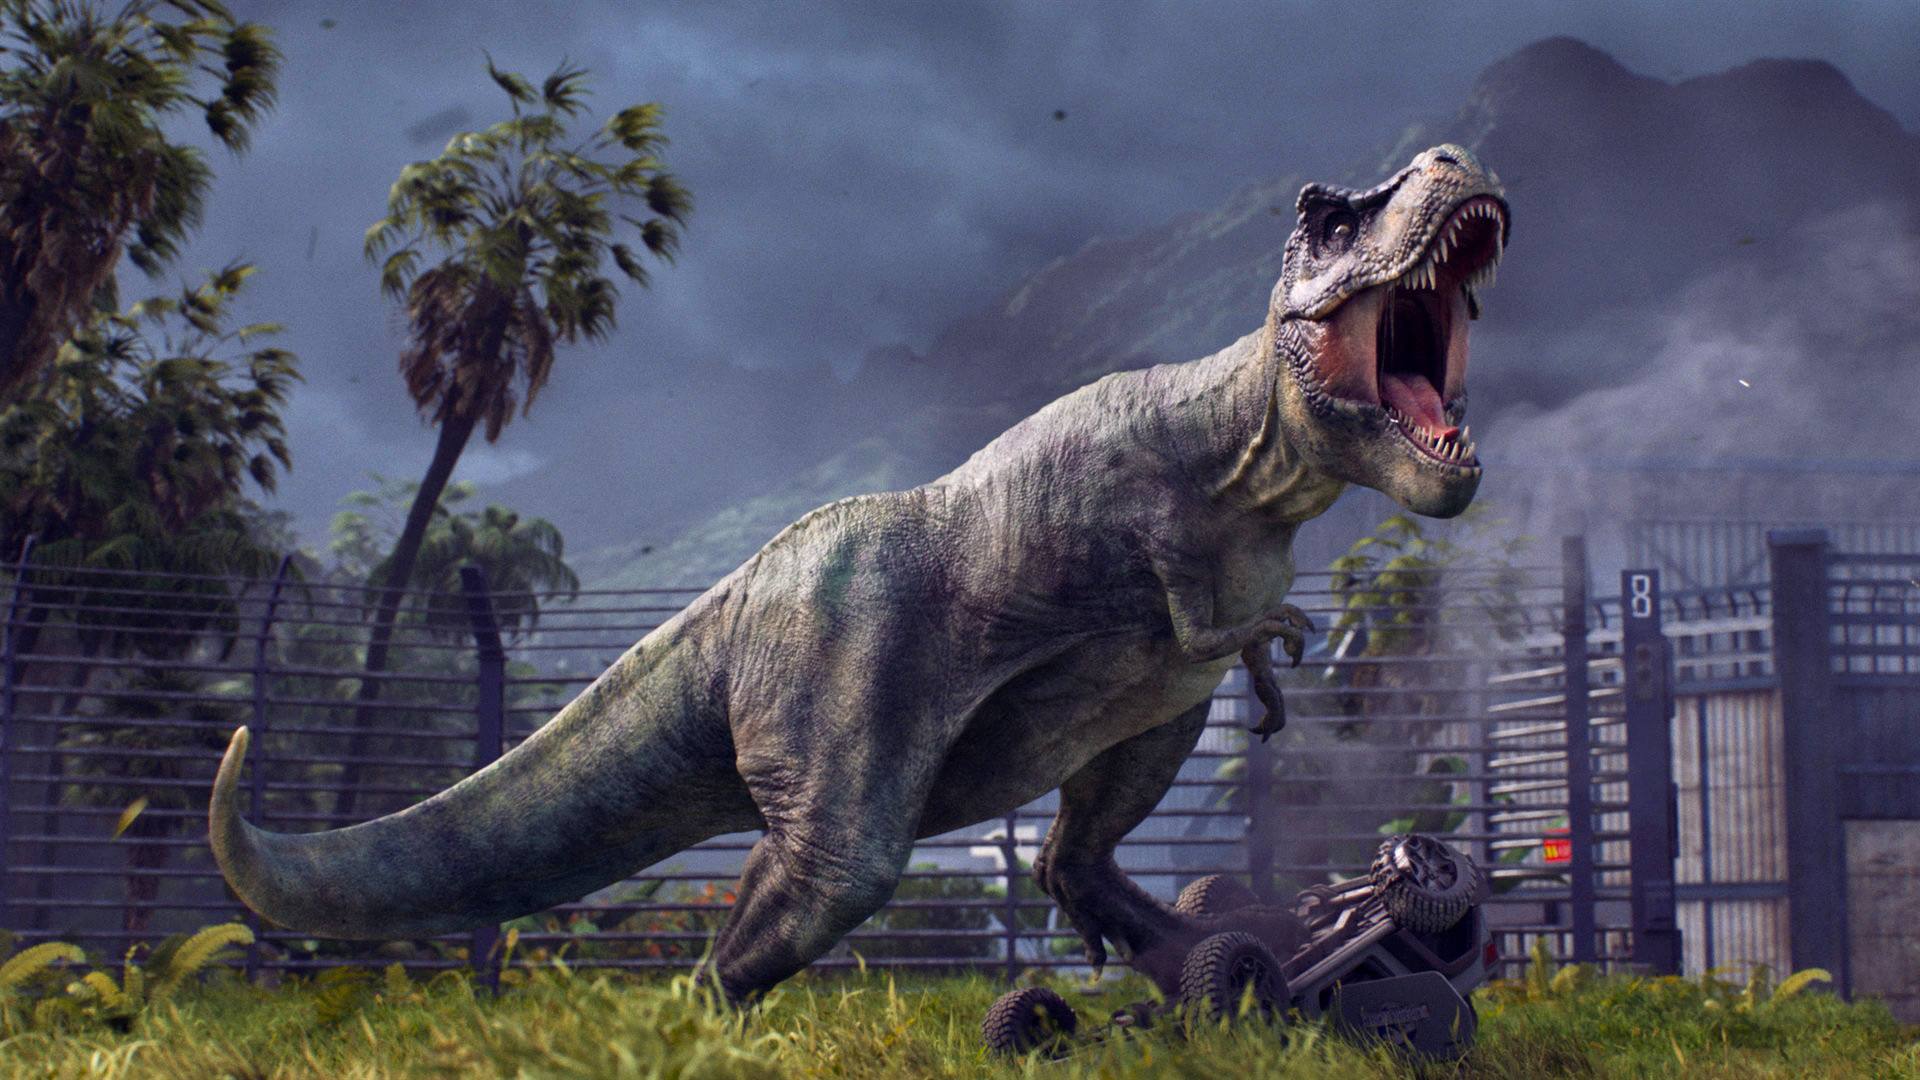 《侏罗纪世界:进化》和电影一样,永远不会有完美的侏罗纪公园